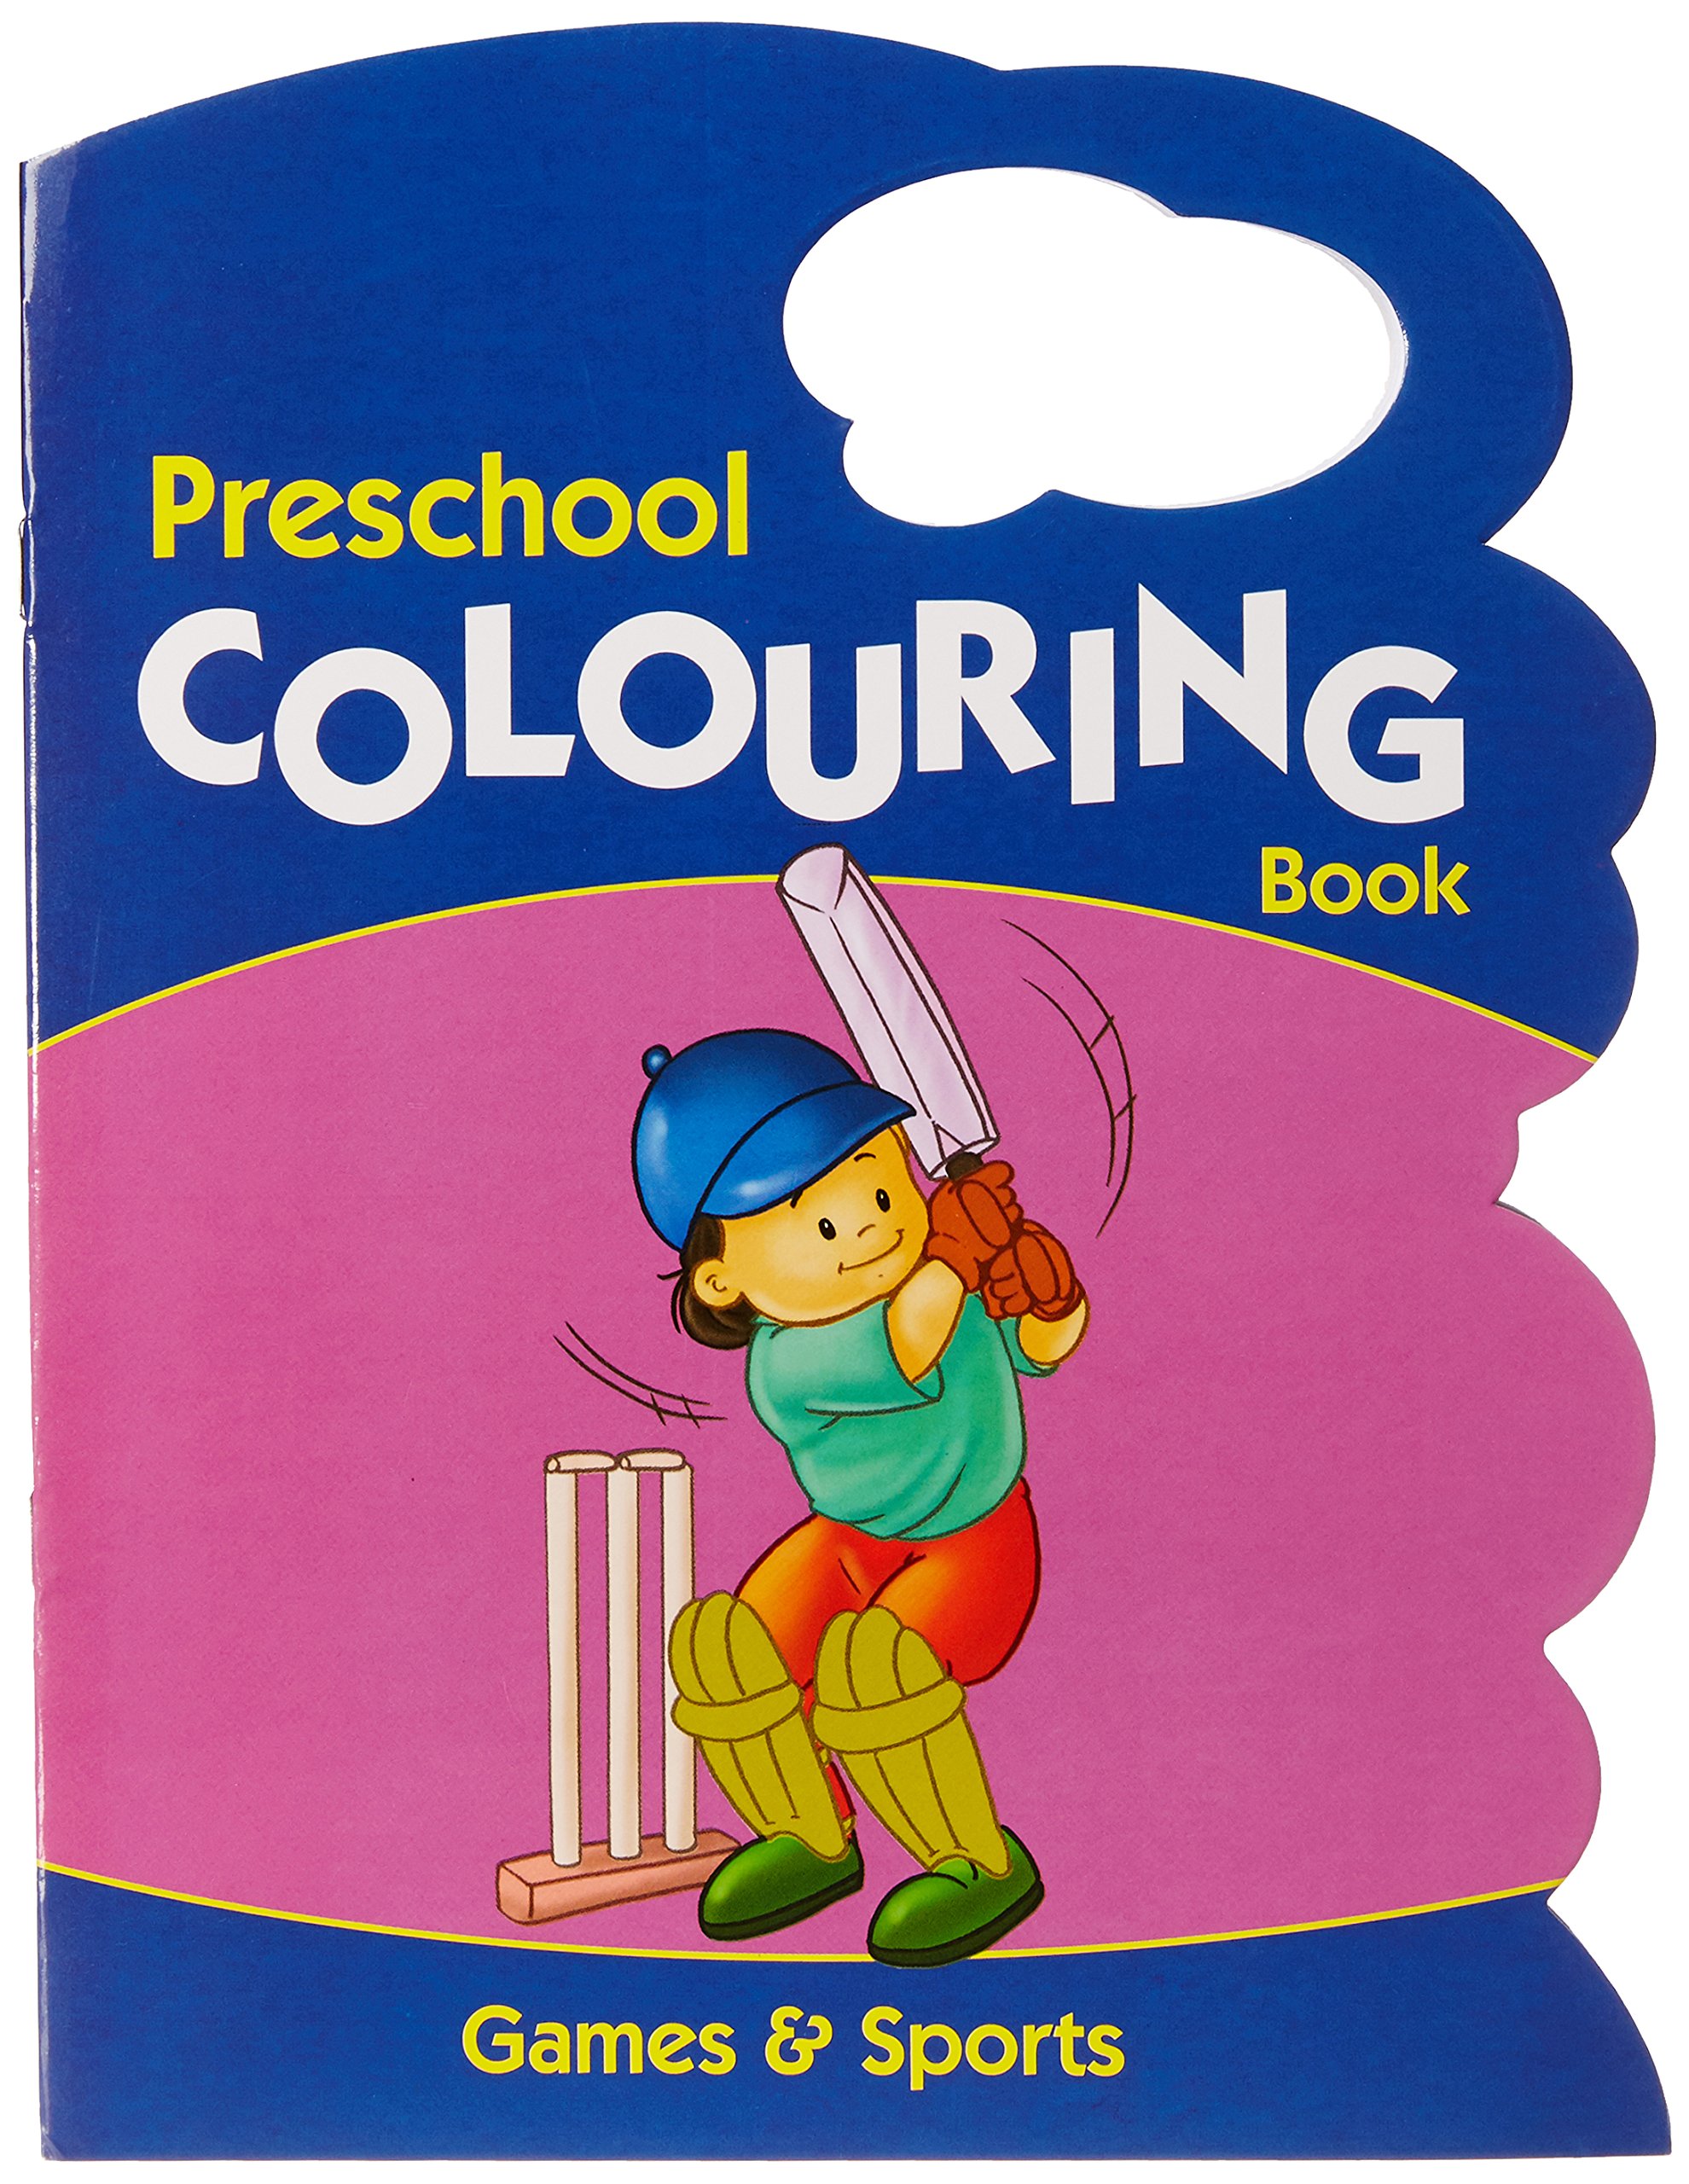 Games & Sports - Preschool Colouring Book (Preschool Colouring Books) 